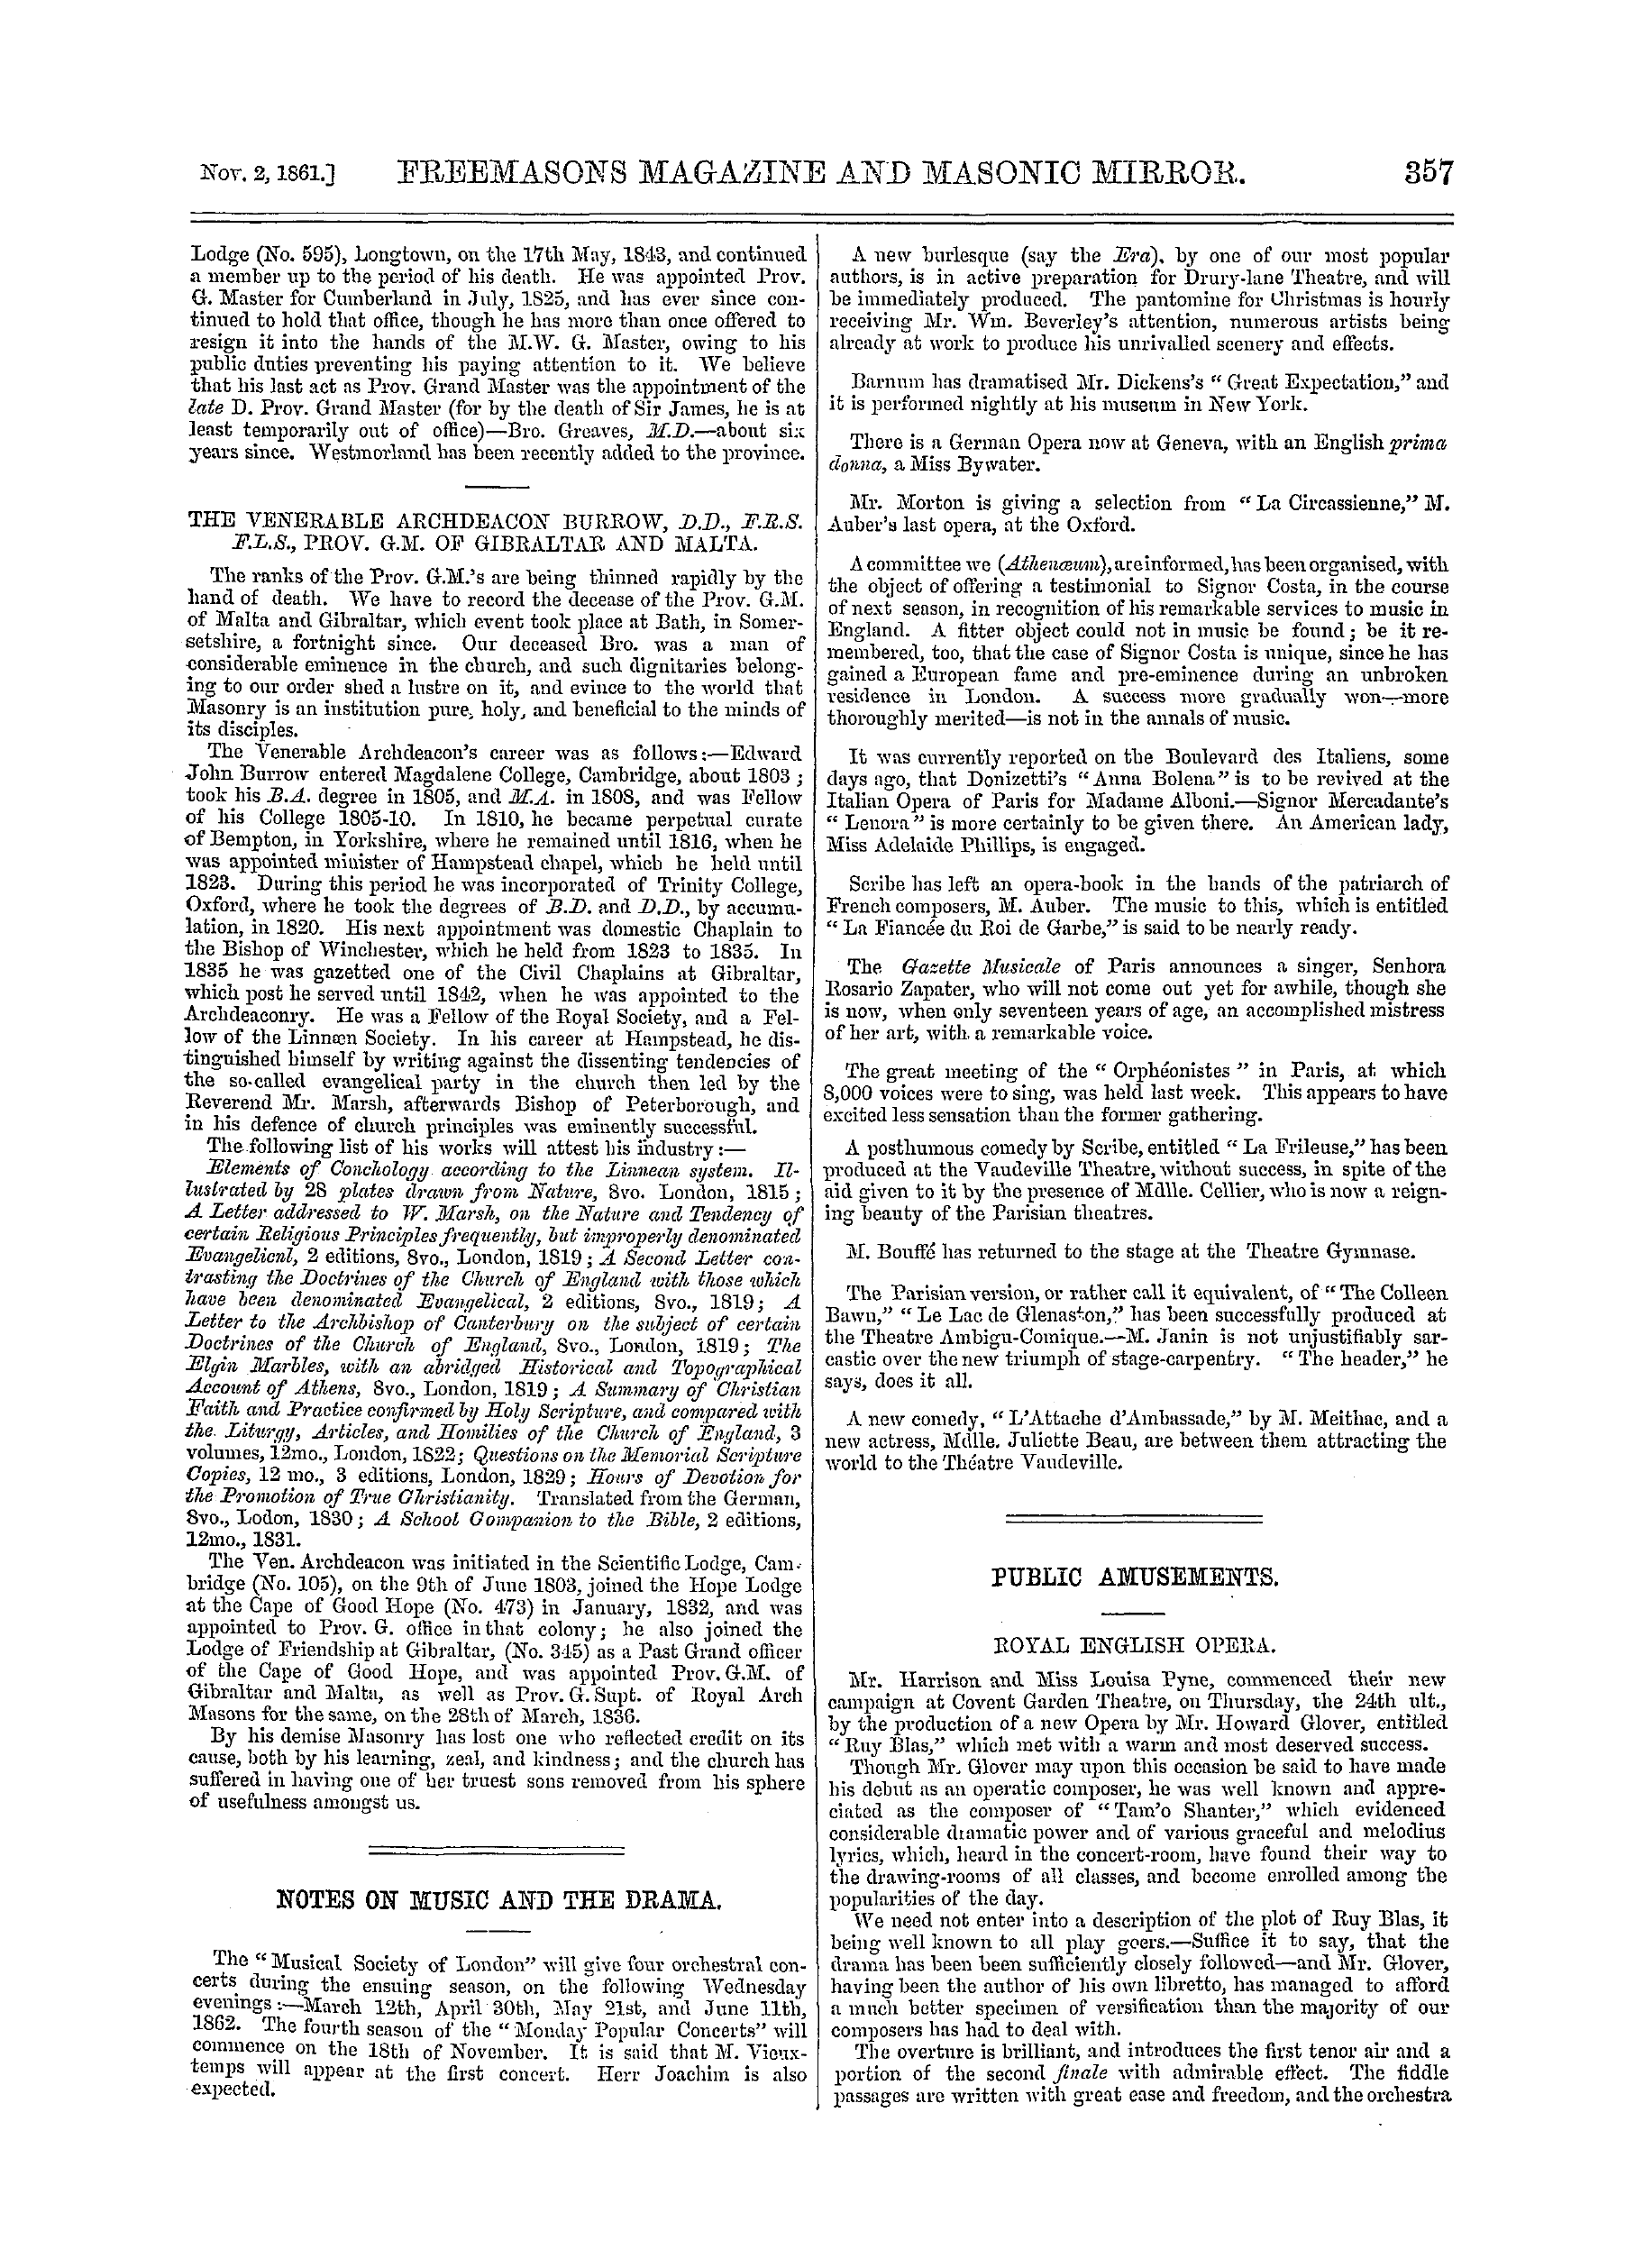 The Freemasons' Monthly Magazine: 1861-11-02 - Public Amusements.